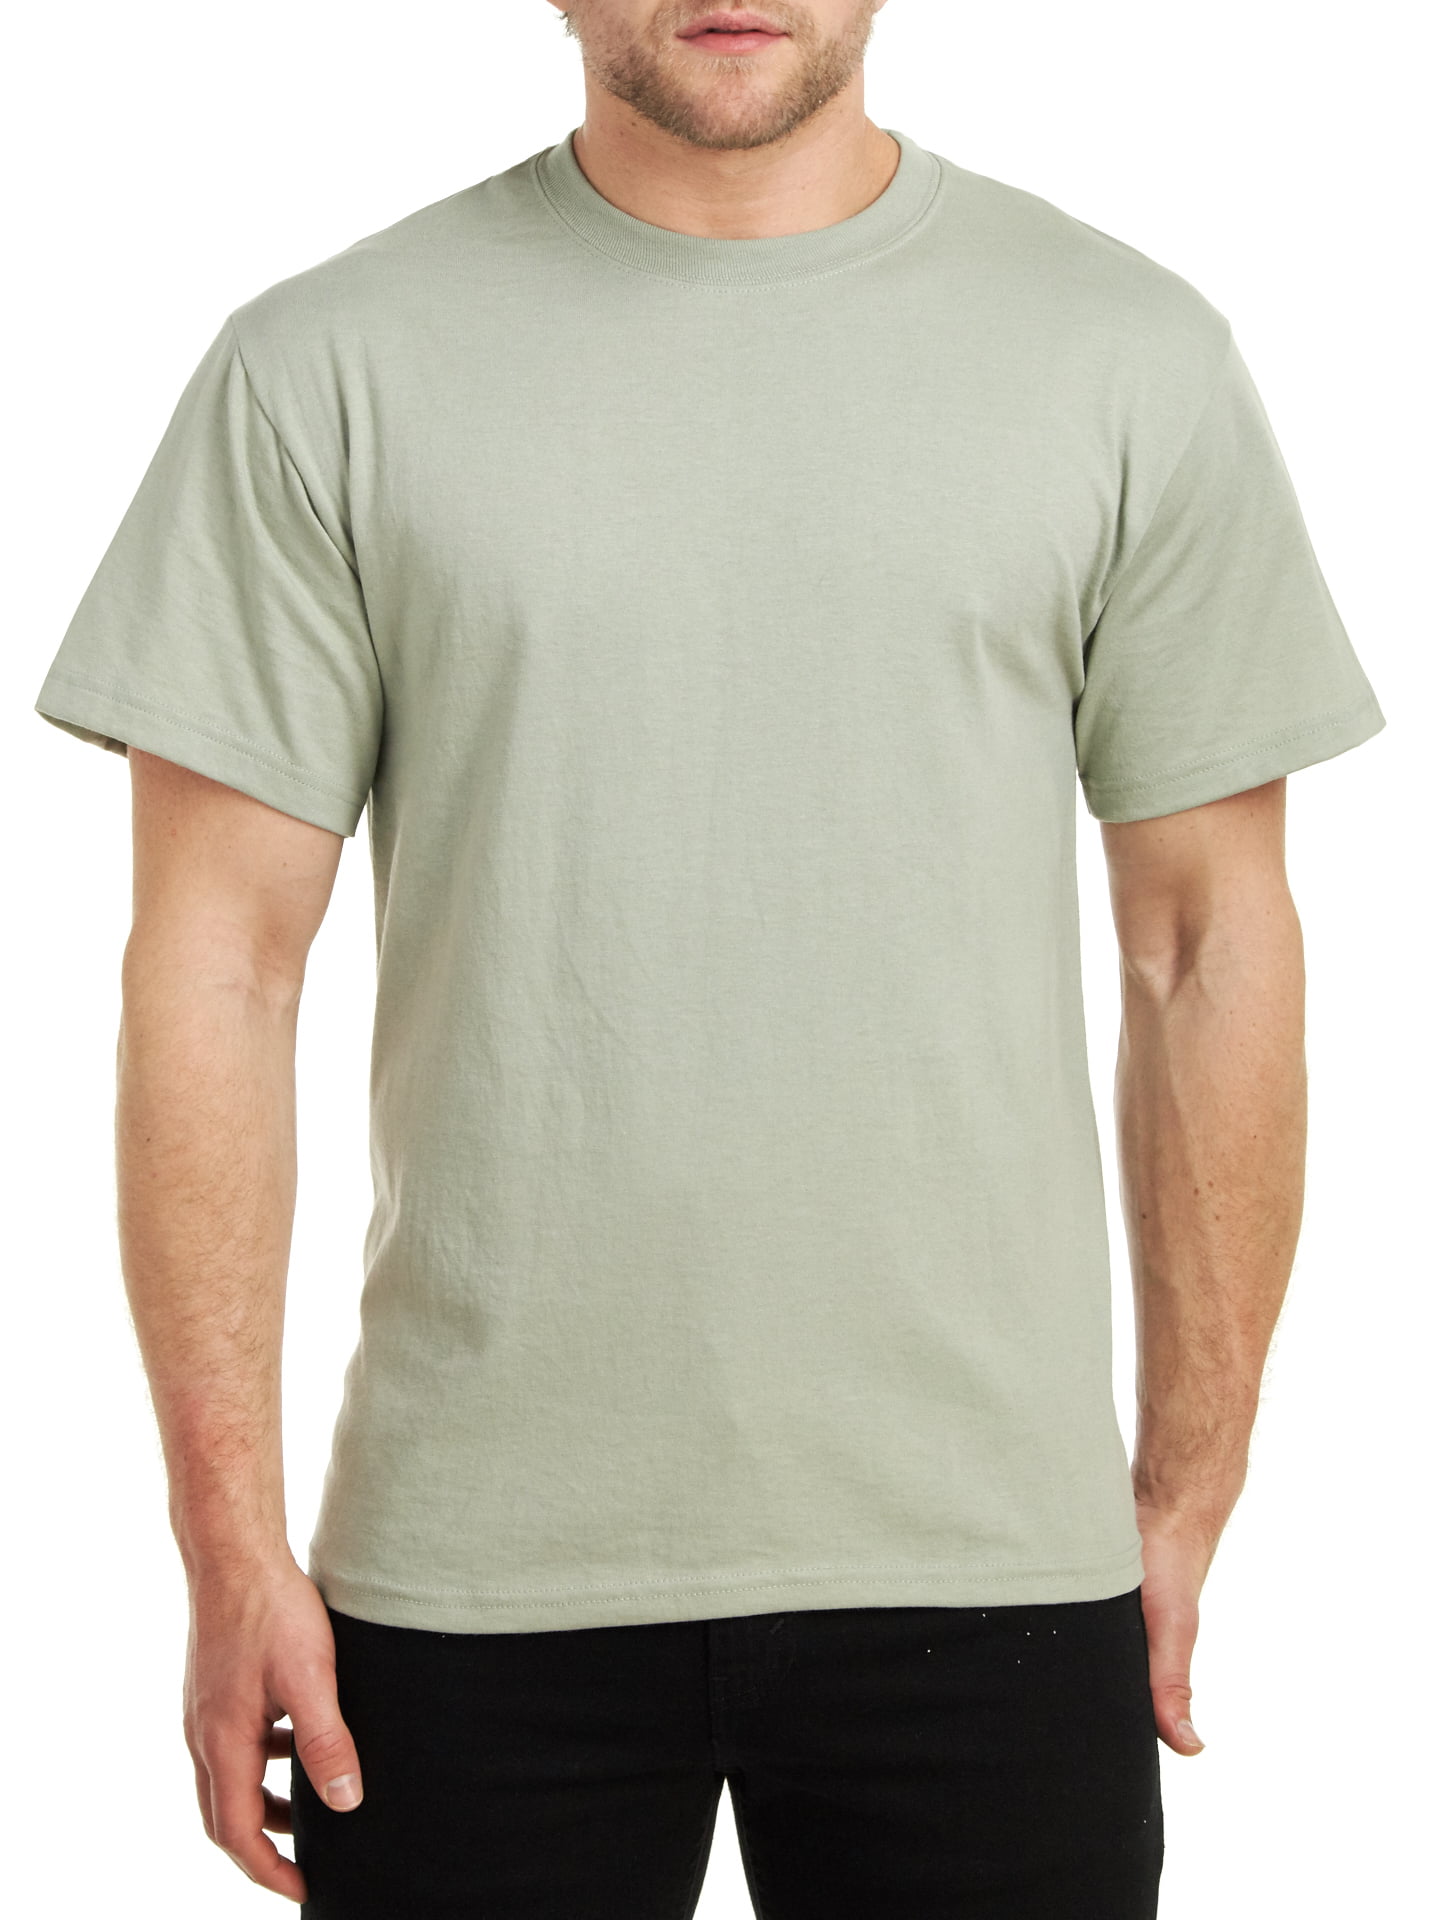 Hanes Men's Comfortblend Short Sleeve 50/50 Plain T-Shirt 5170-25 Colors 